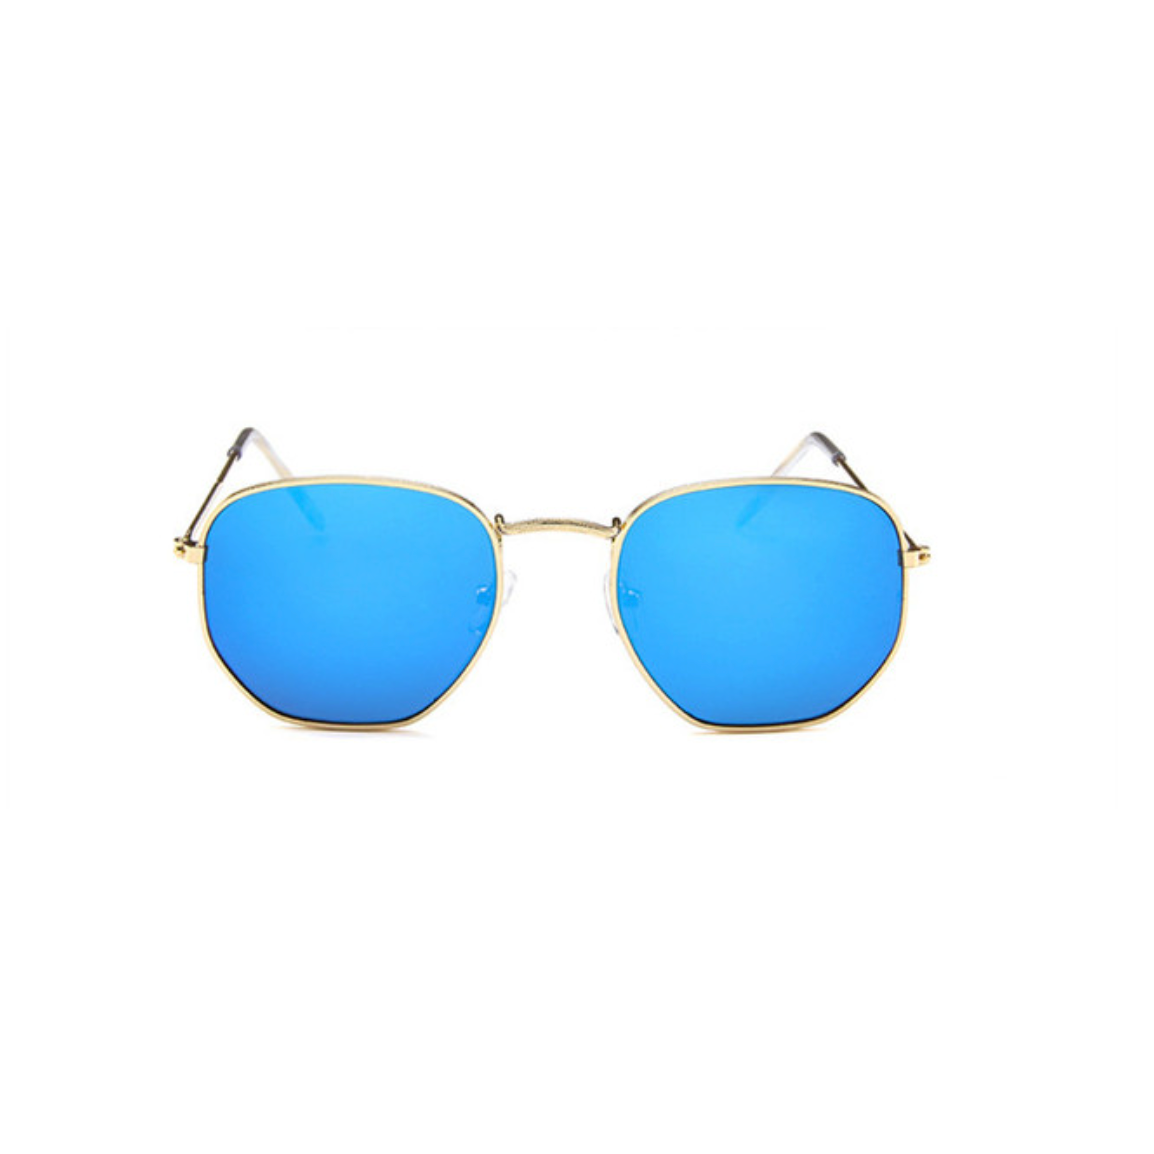 Damskie klasyczne okulary przeciwsłoneczne Marina - Niebieski / Uniwersalny